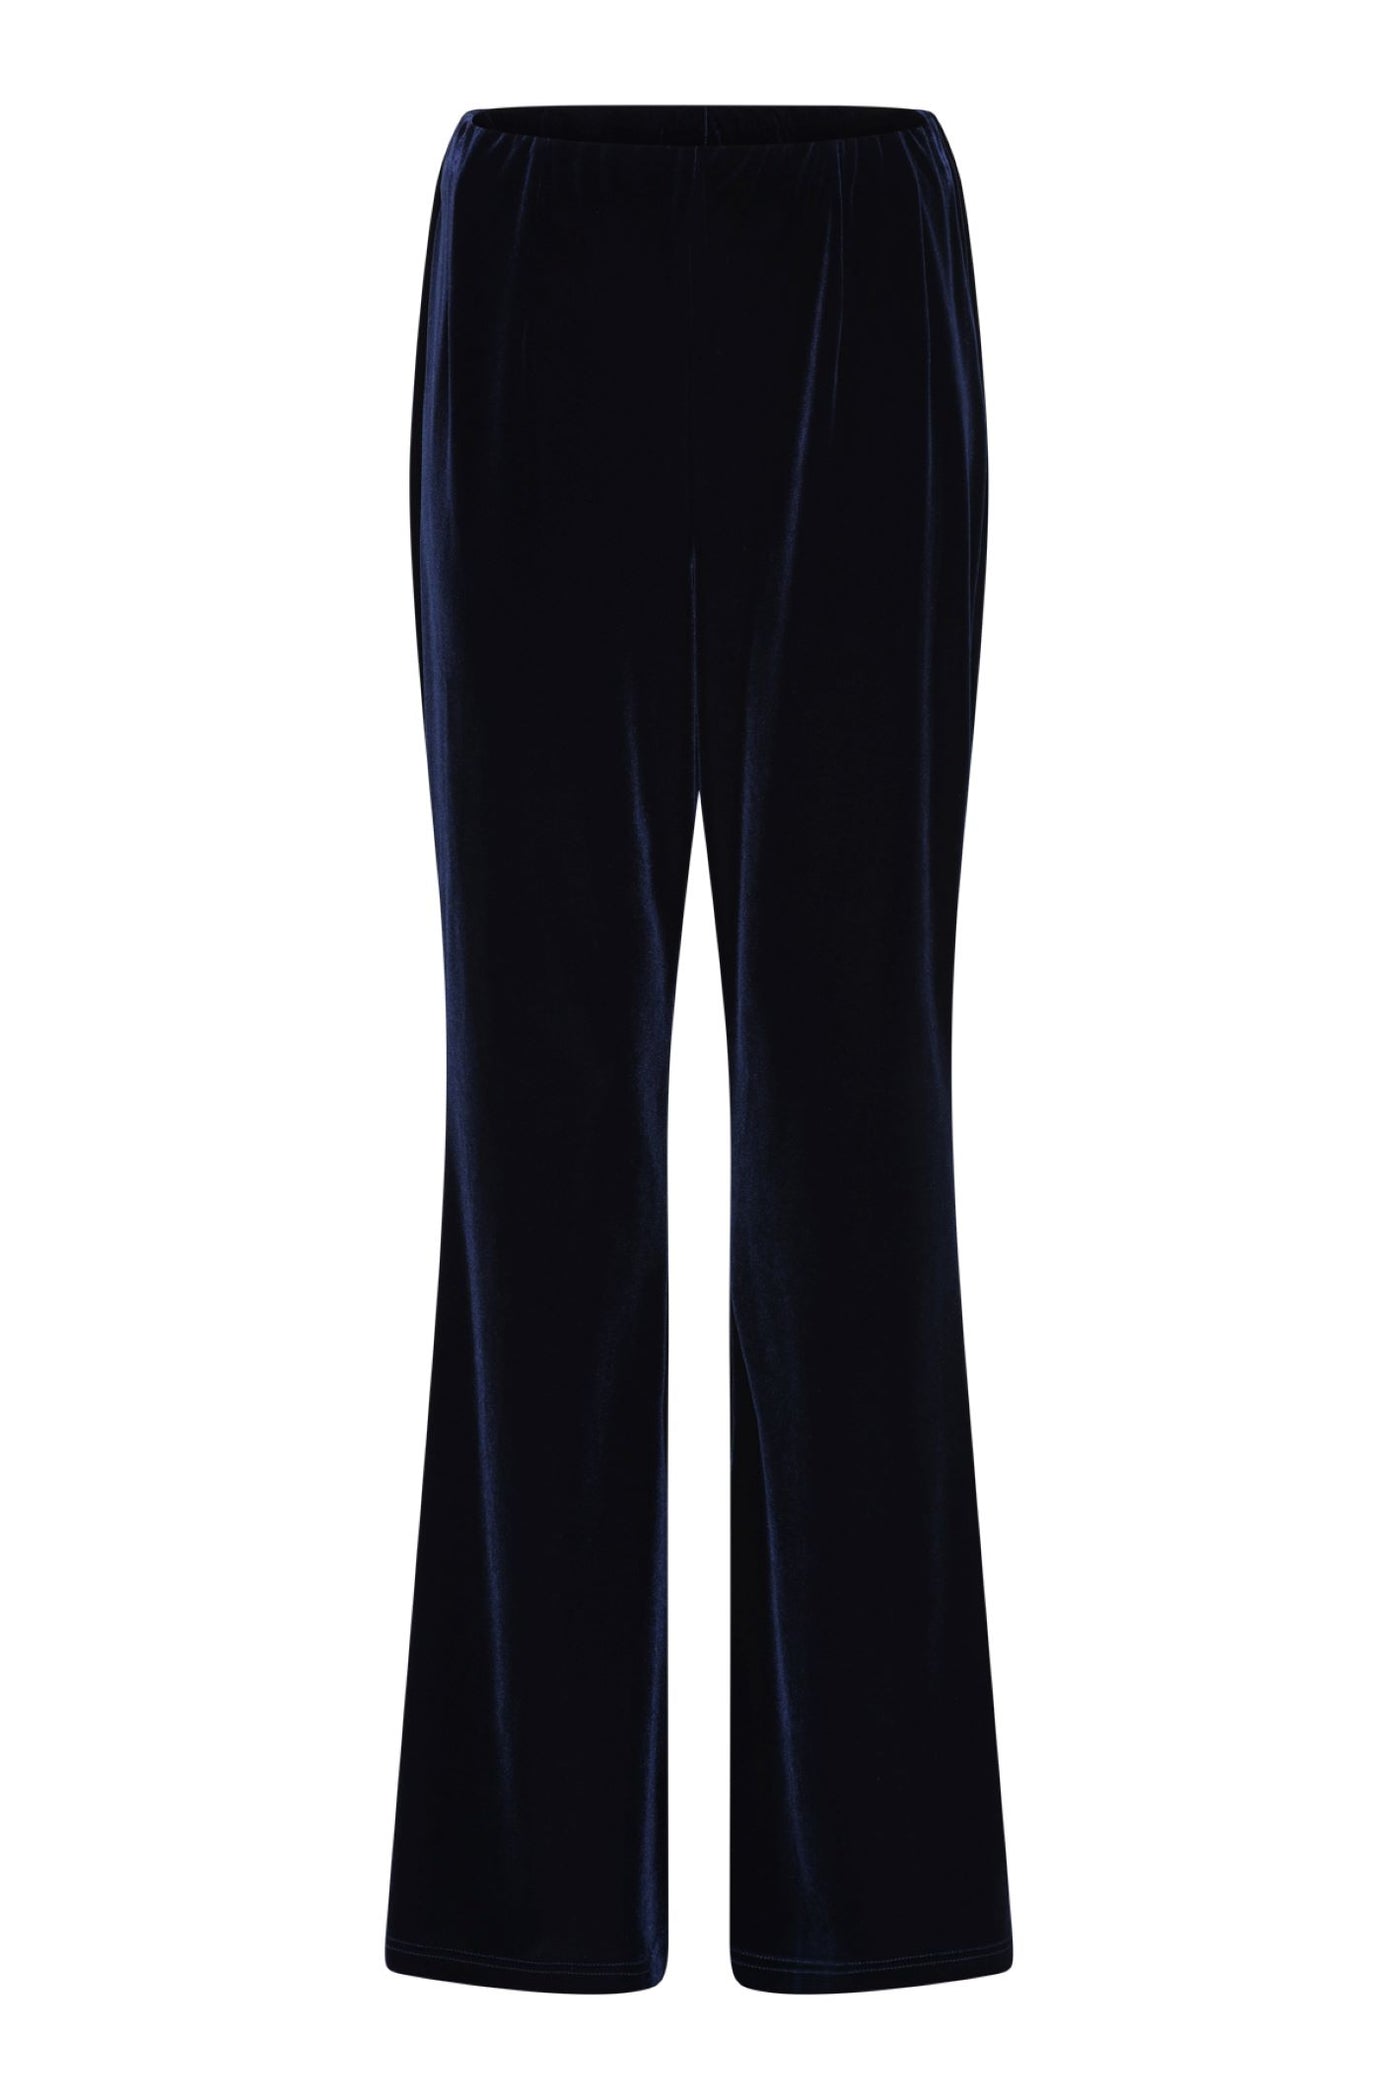 Tia 71307 Velvet Navy Straight Evening Trouser